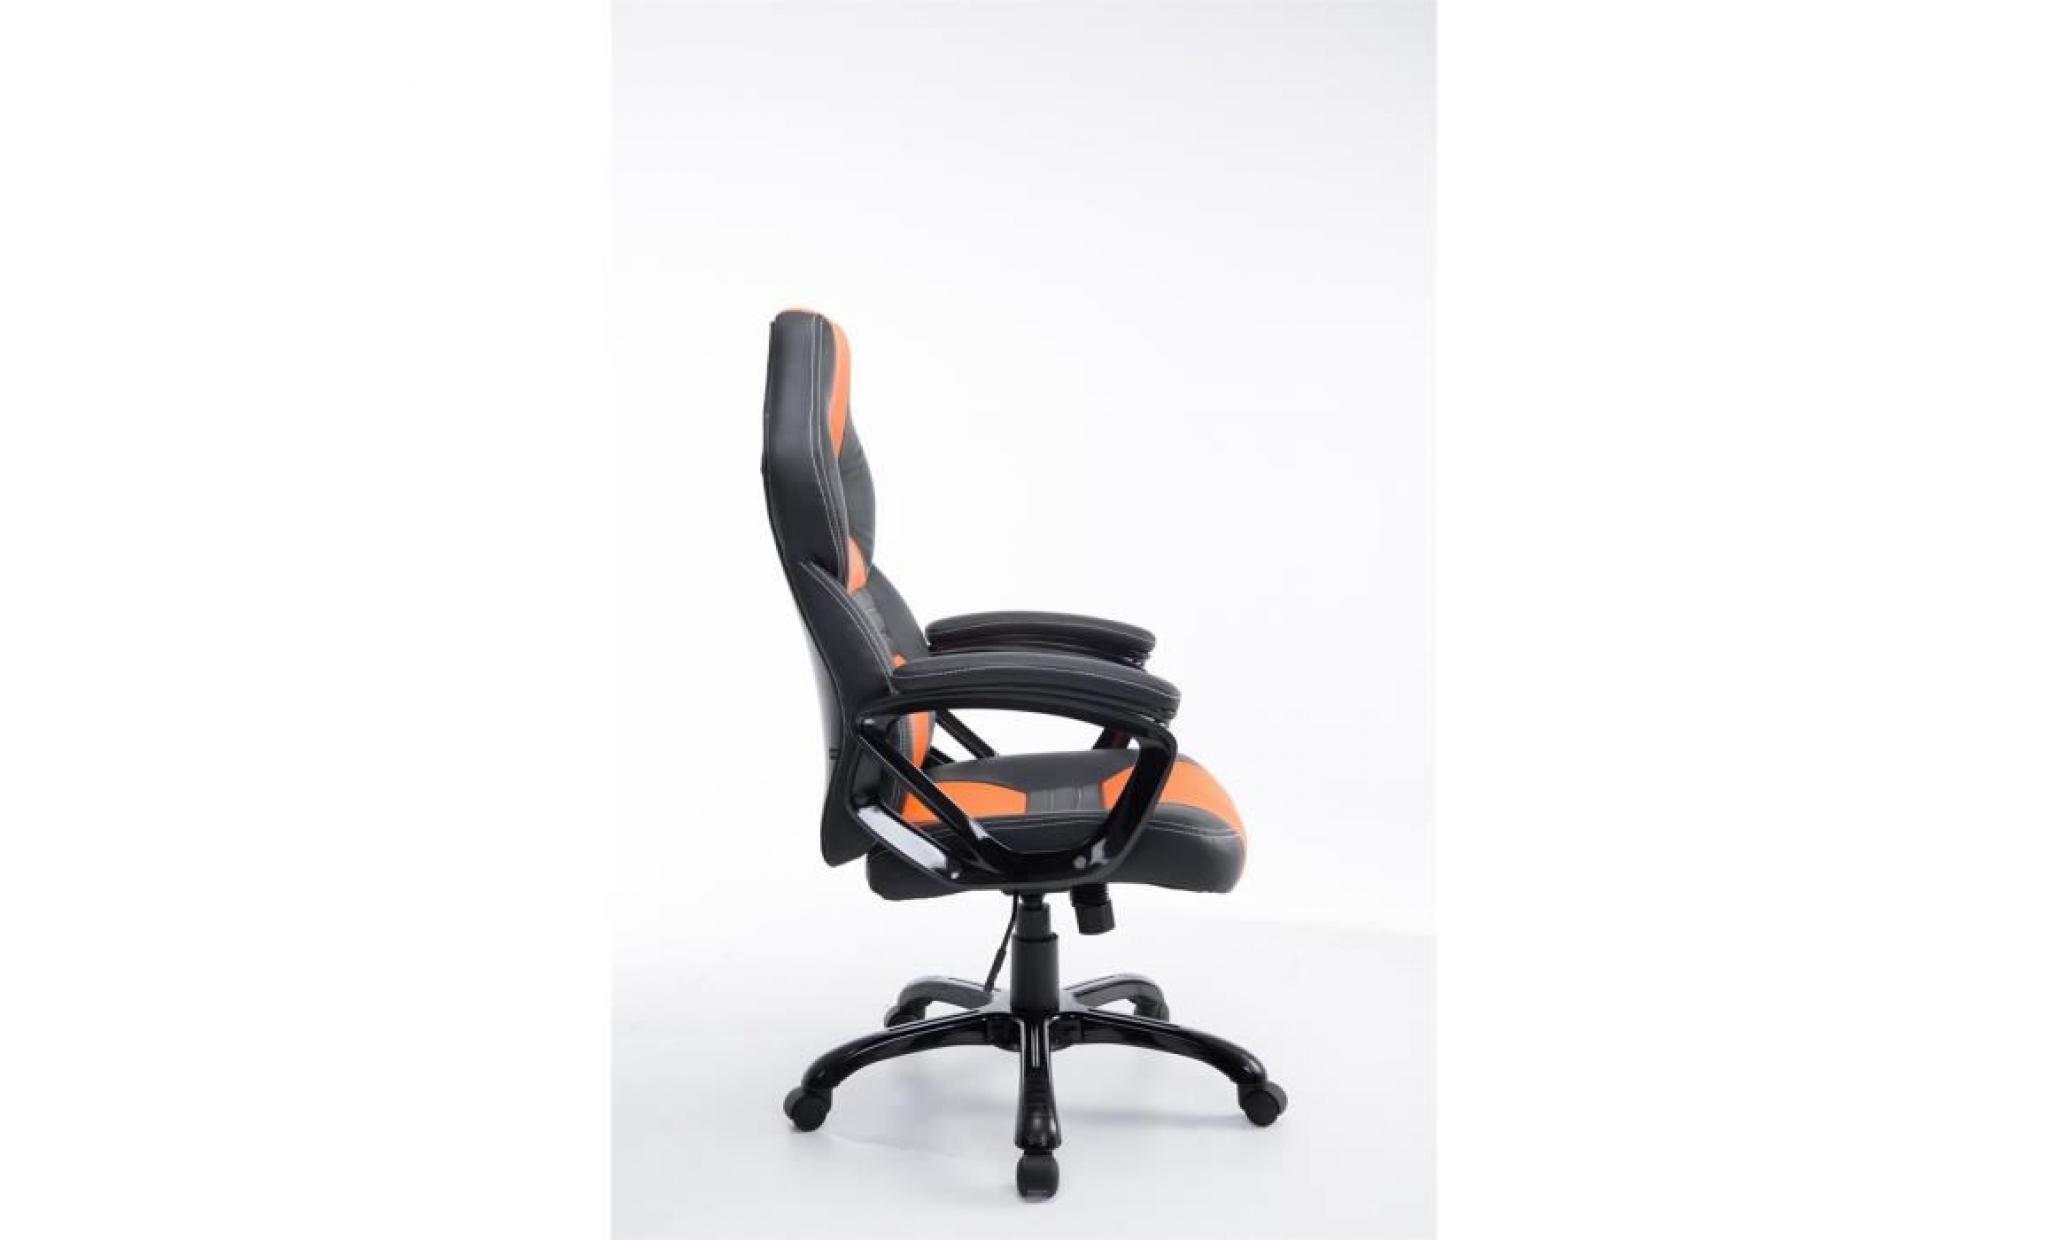 clp fauteuil de bureau pedro xl, réglable en hauteur 46   56 cm, capacité de charge max 180 kg, revêtement de haute qualité pas cher